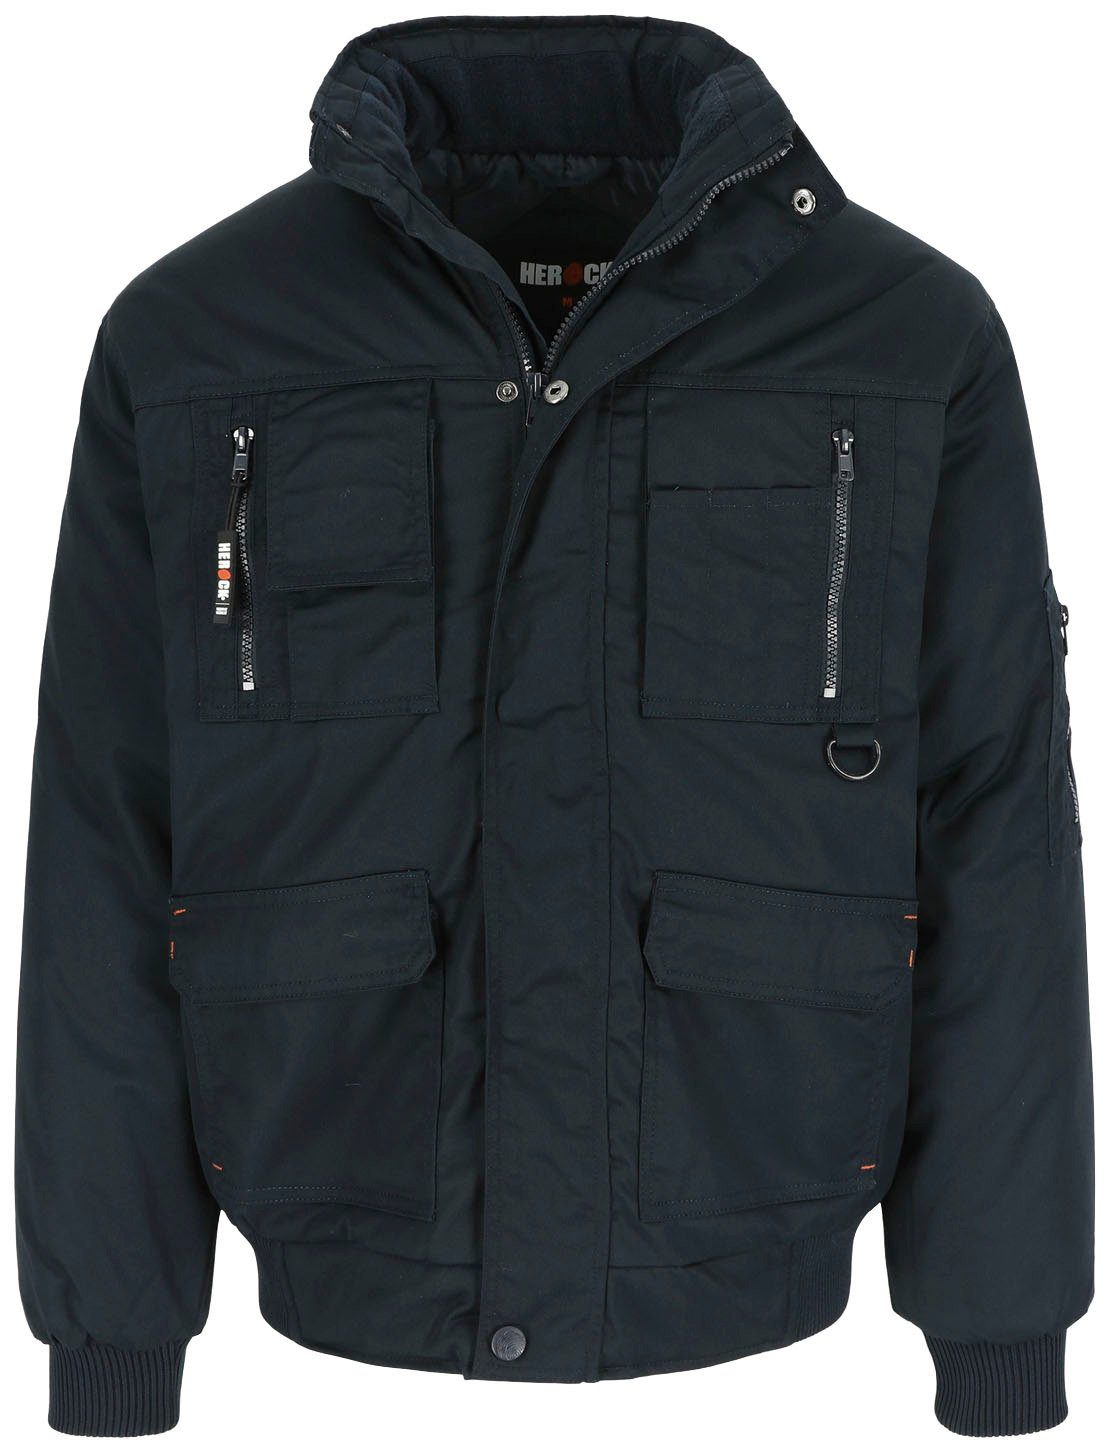 Herock Arbeitsjacke Typhon Jacke robust, mit Fleece-Kragen, Farben marine viele Taschen, viele Wasserabweisend